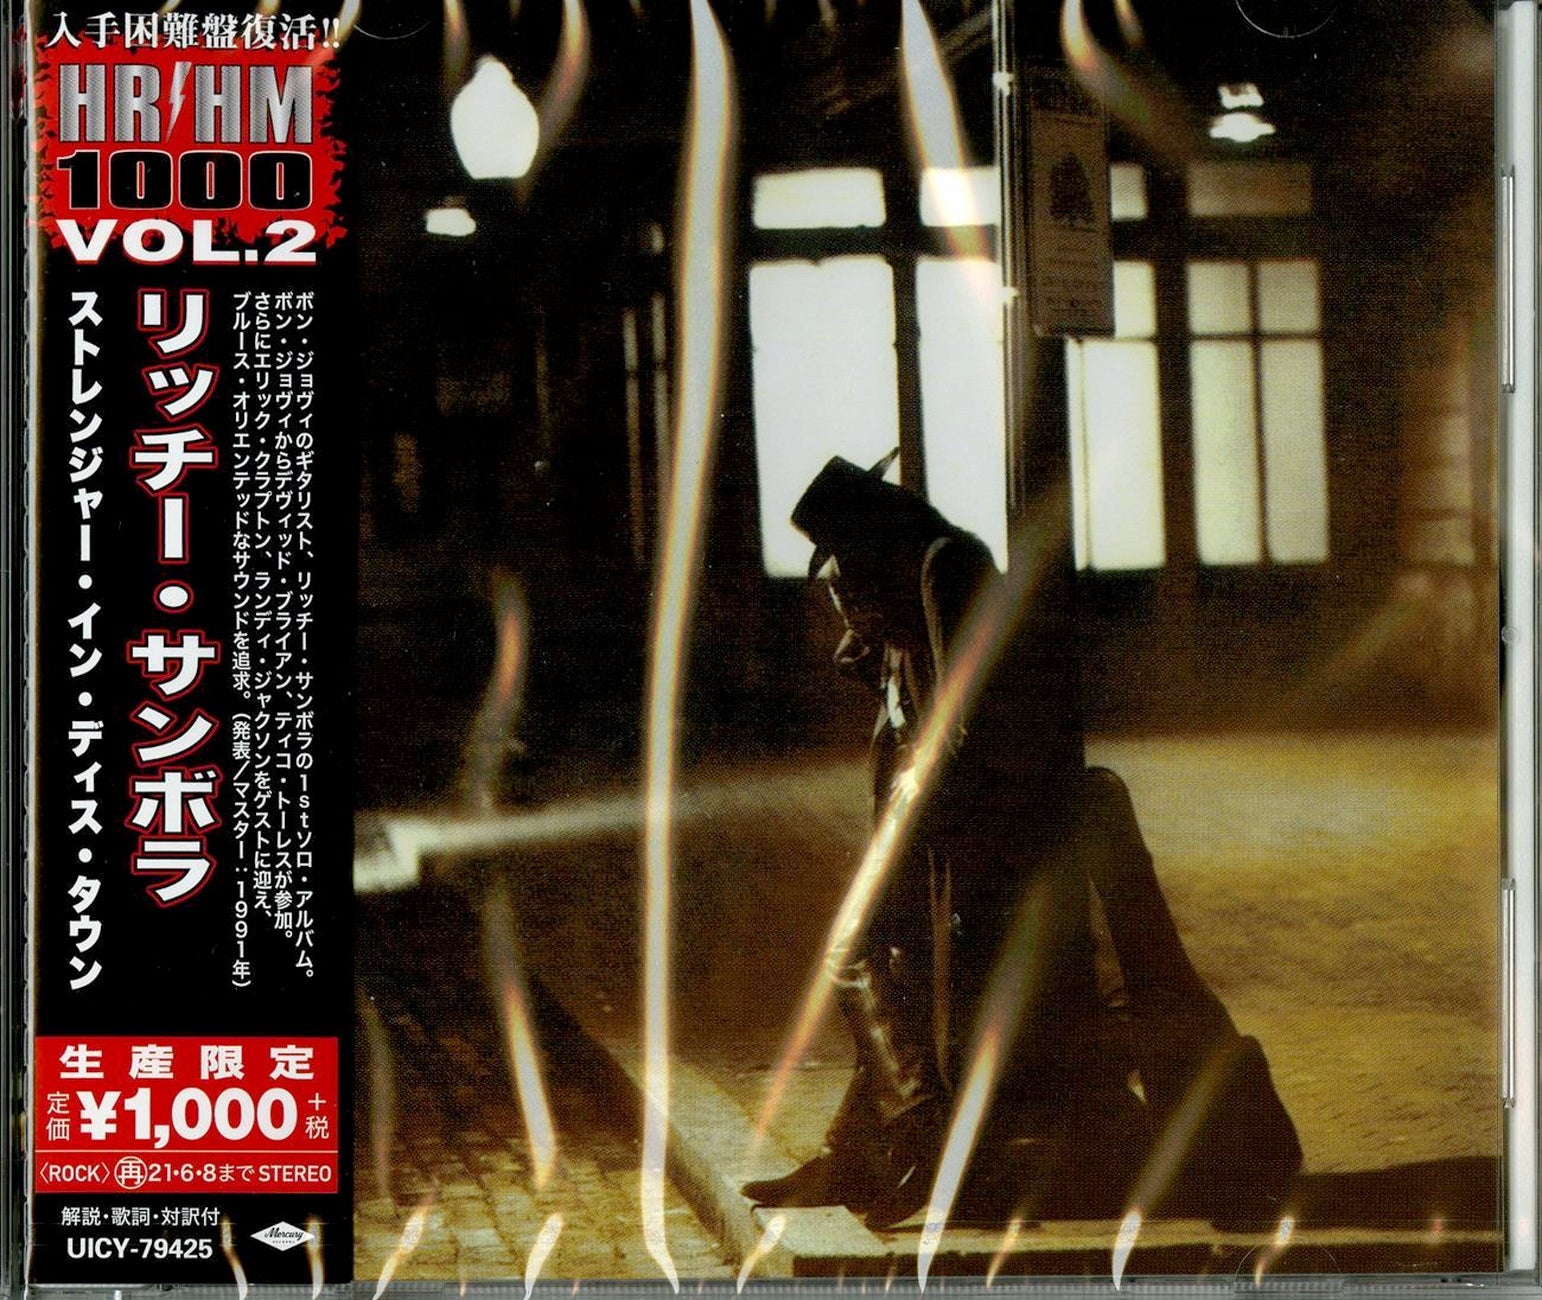 Sambora Stranger In This Town Japan Bonus Track Limited - CDs Vinyl Japan Store